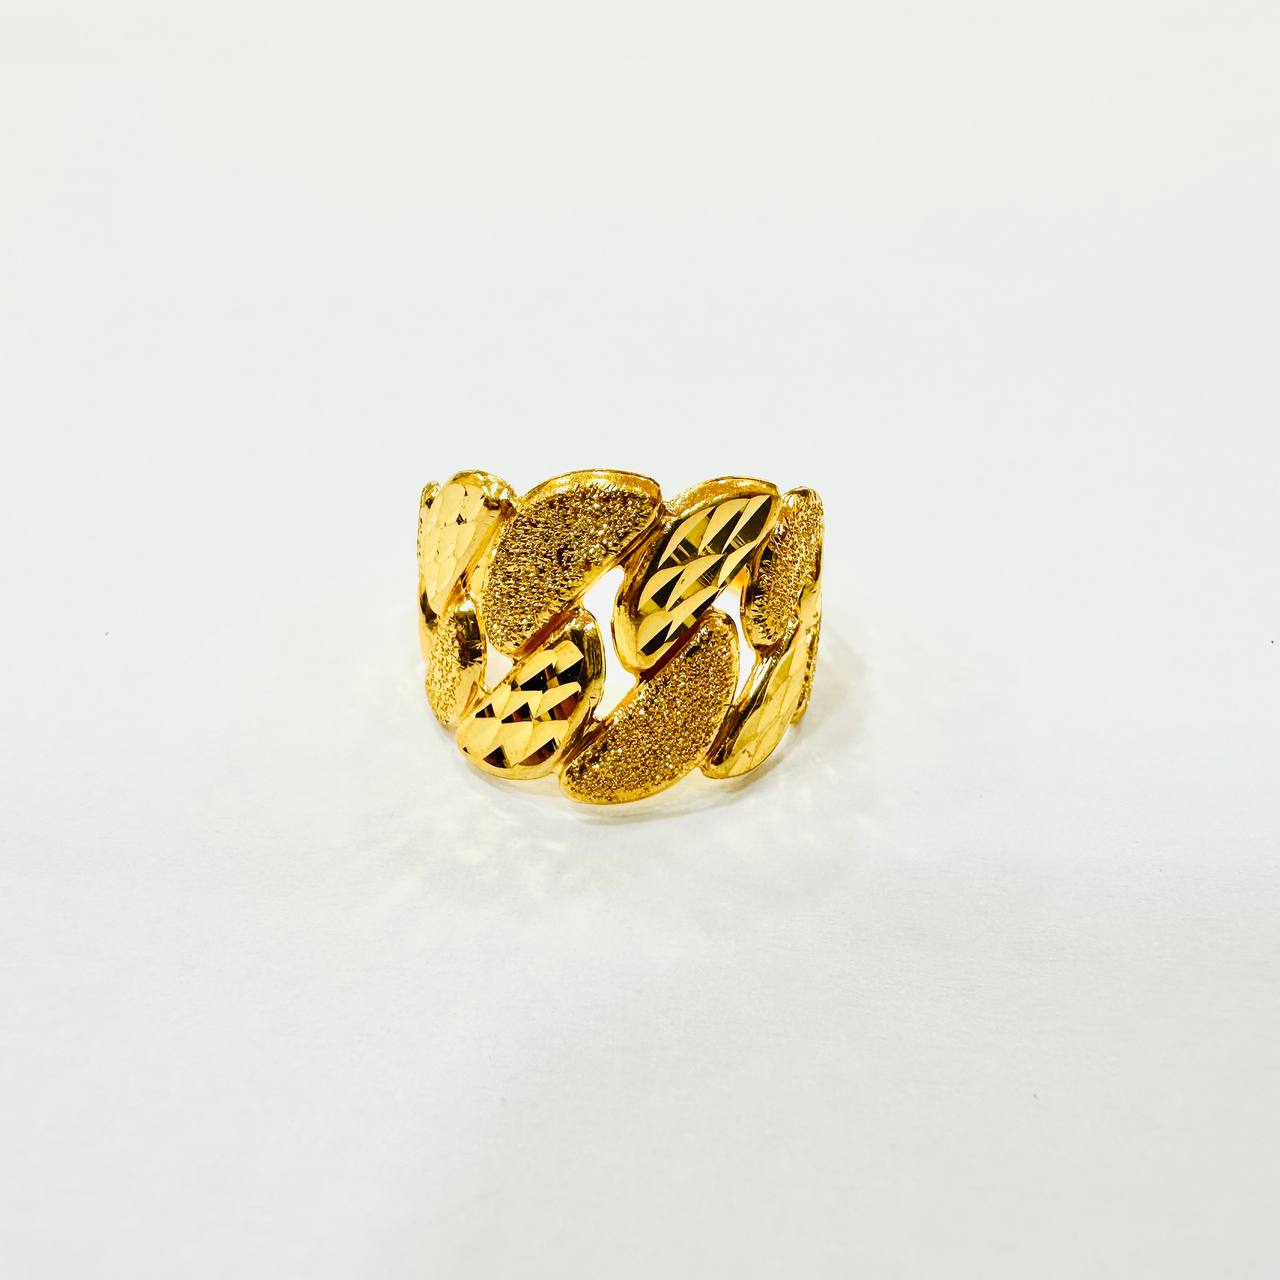 22K / 916 Gold Wide Milo Ring-916 gold-Best Gold Shop